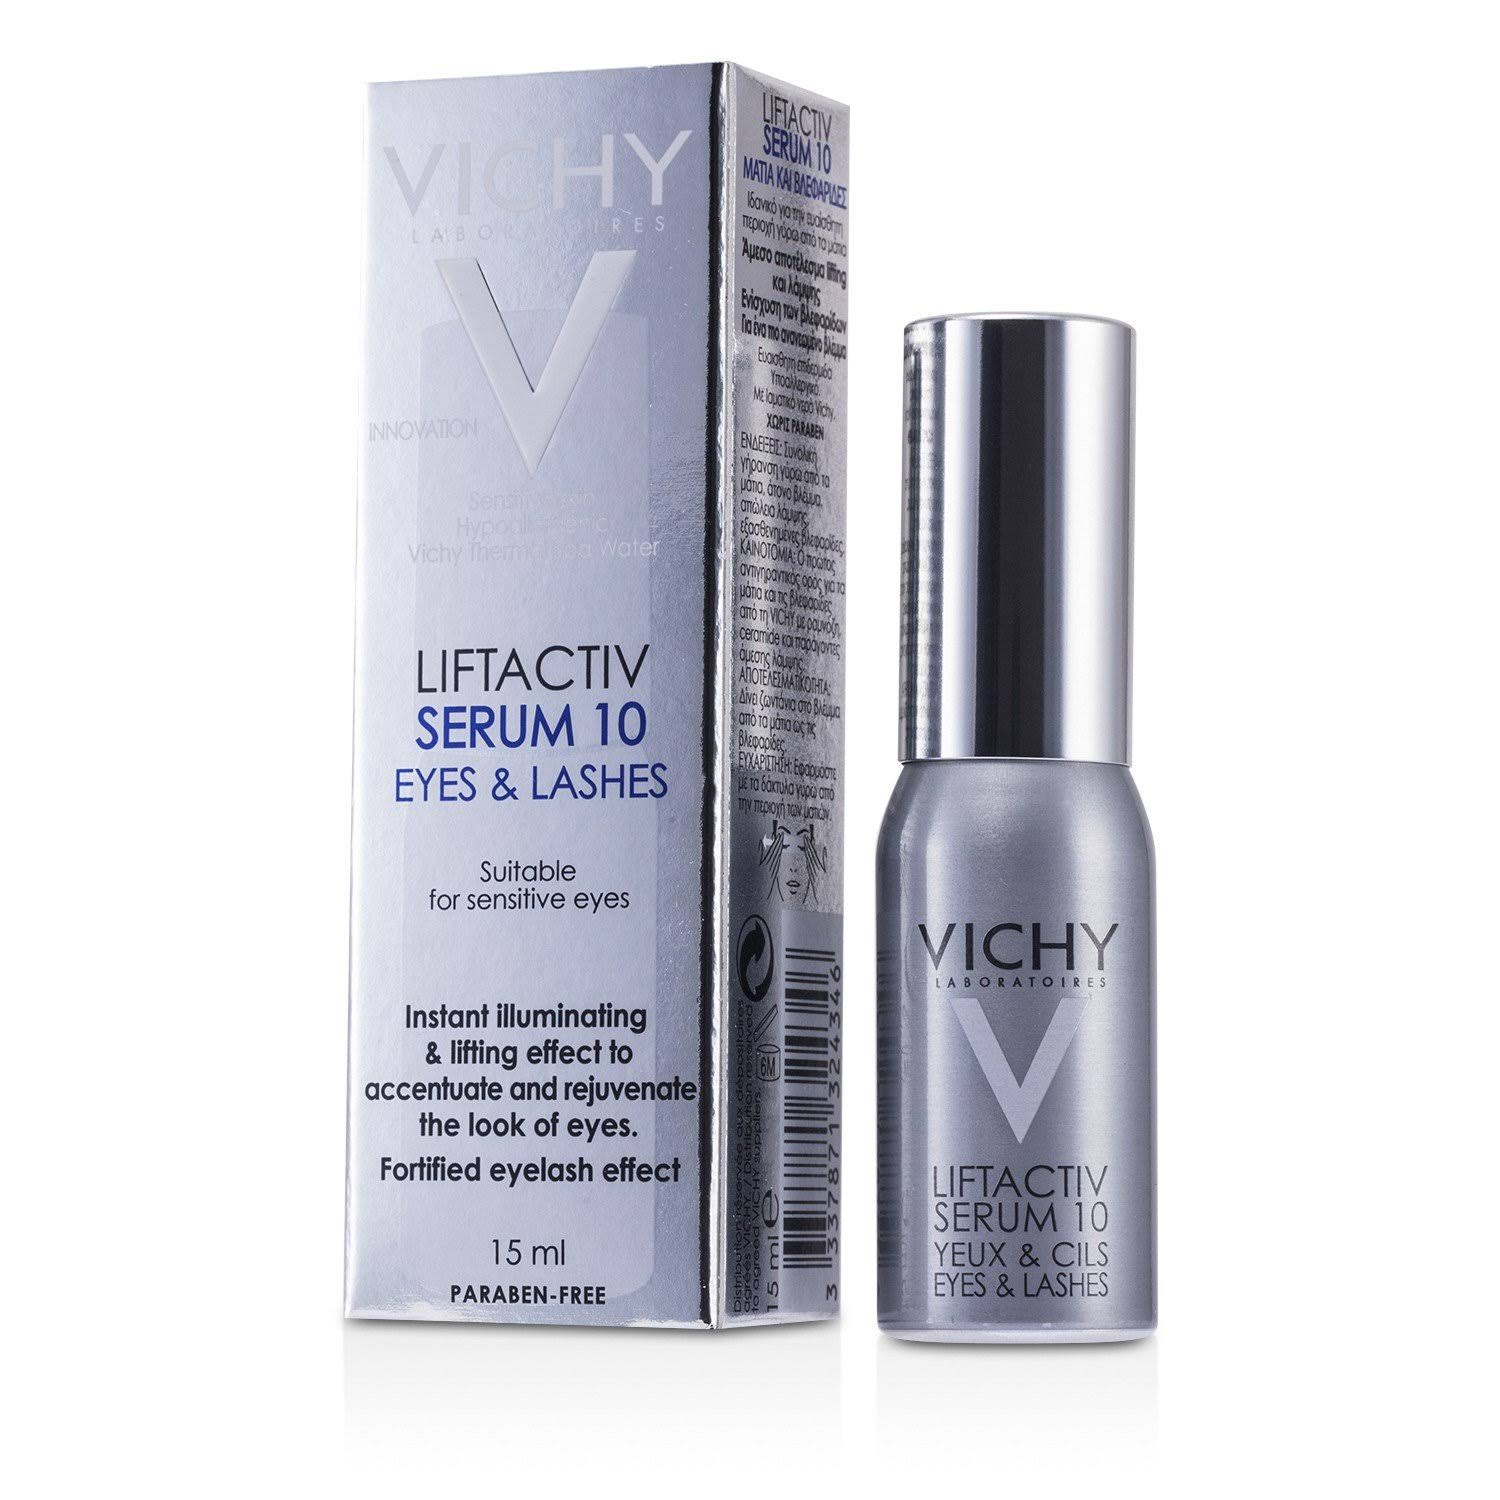 Vichy LiftActiv Serum 10 Eyes and Lashes - 15ml